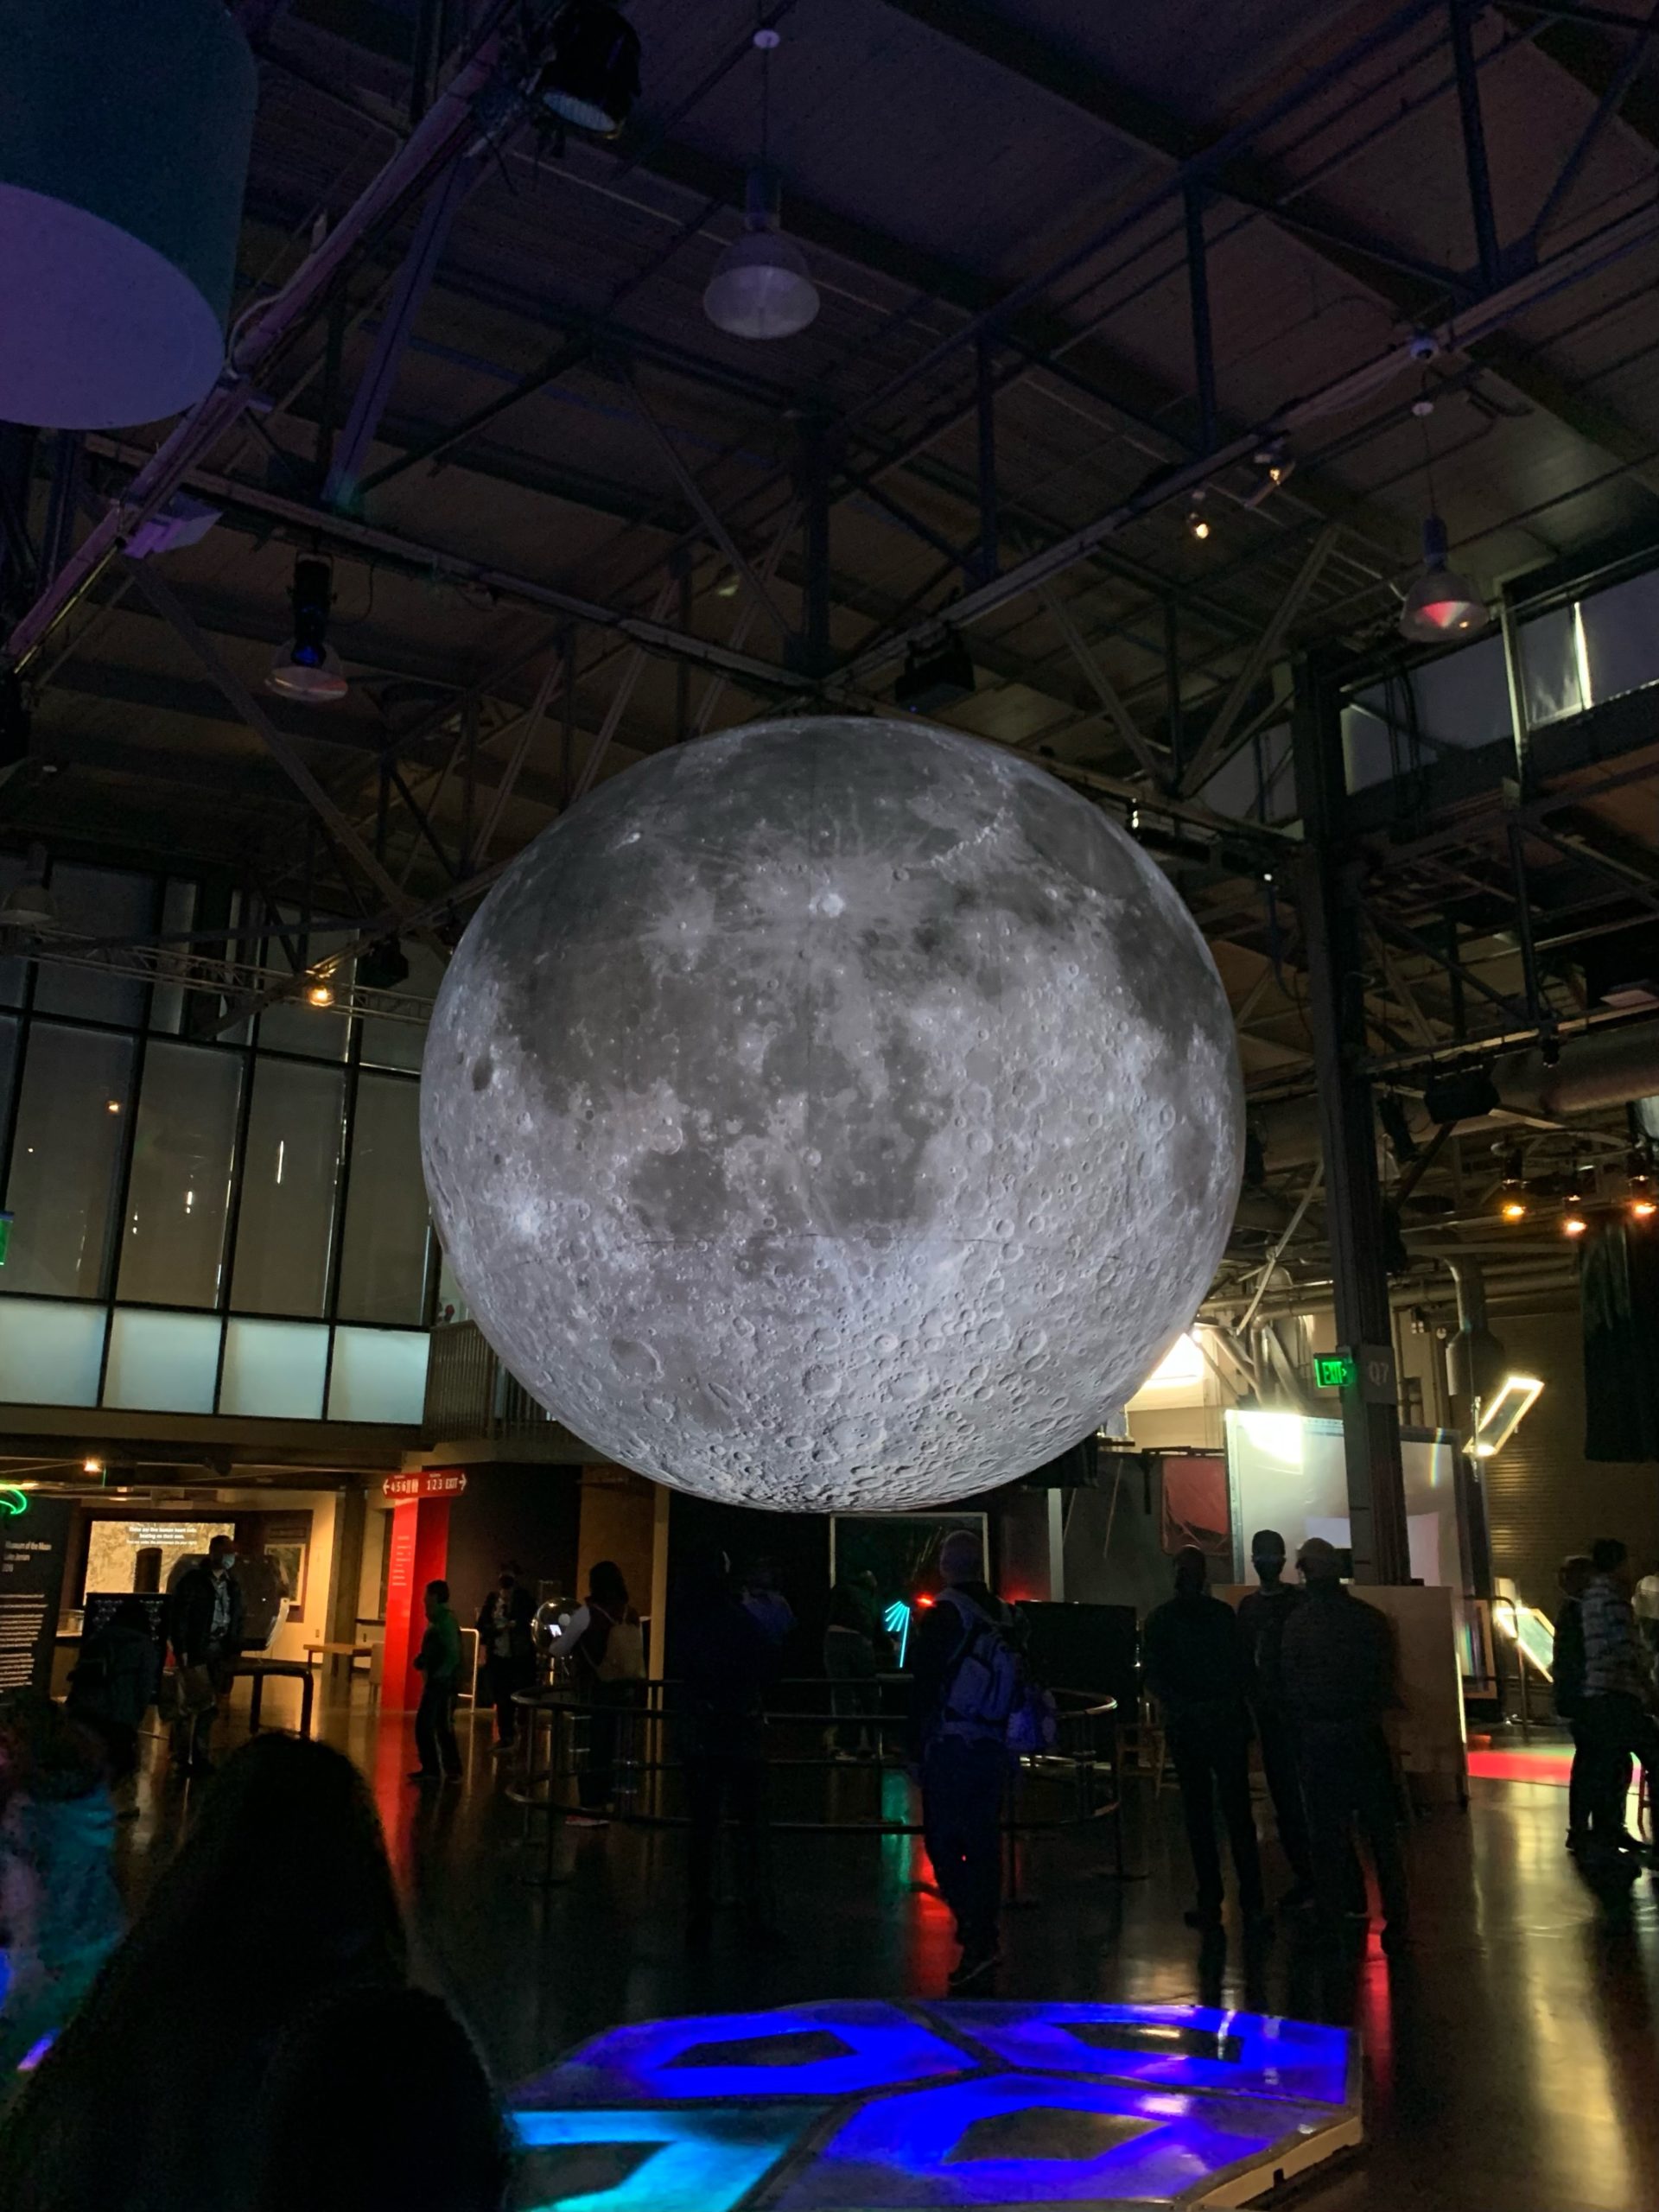 Museum of the moon exhibit at Exploratorium